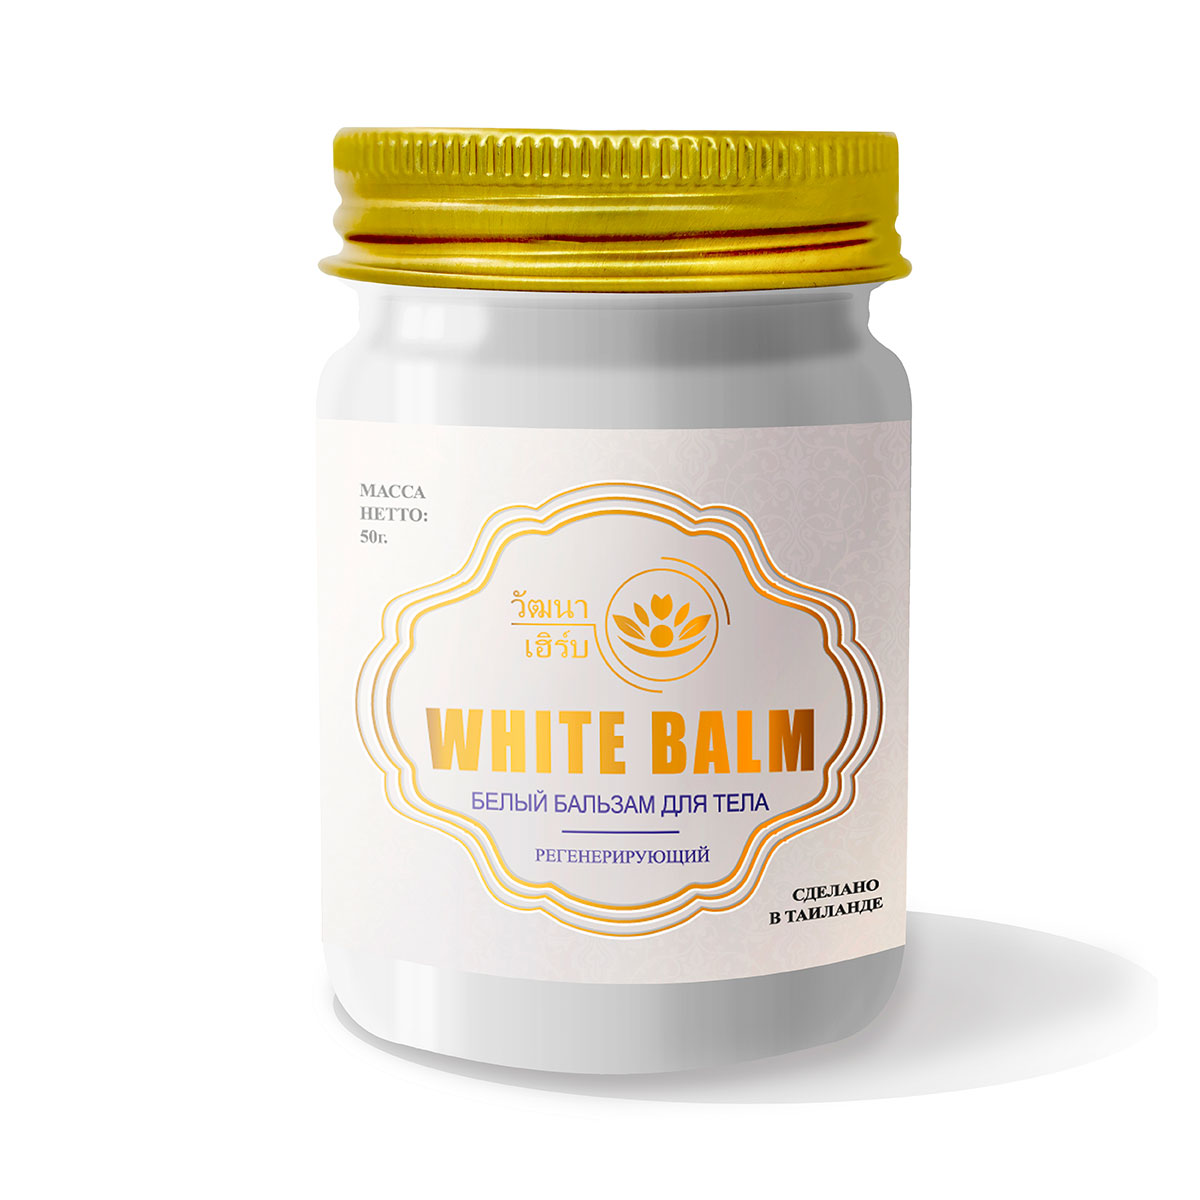 Тайский натуральный Белый бальзам для тела регенерирующий Wattana Herb White Balm 50гр.